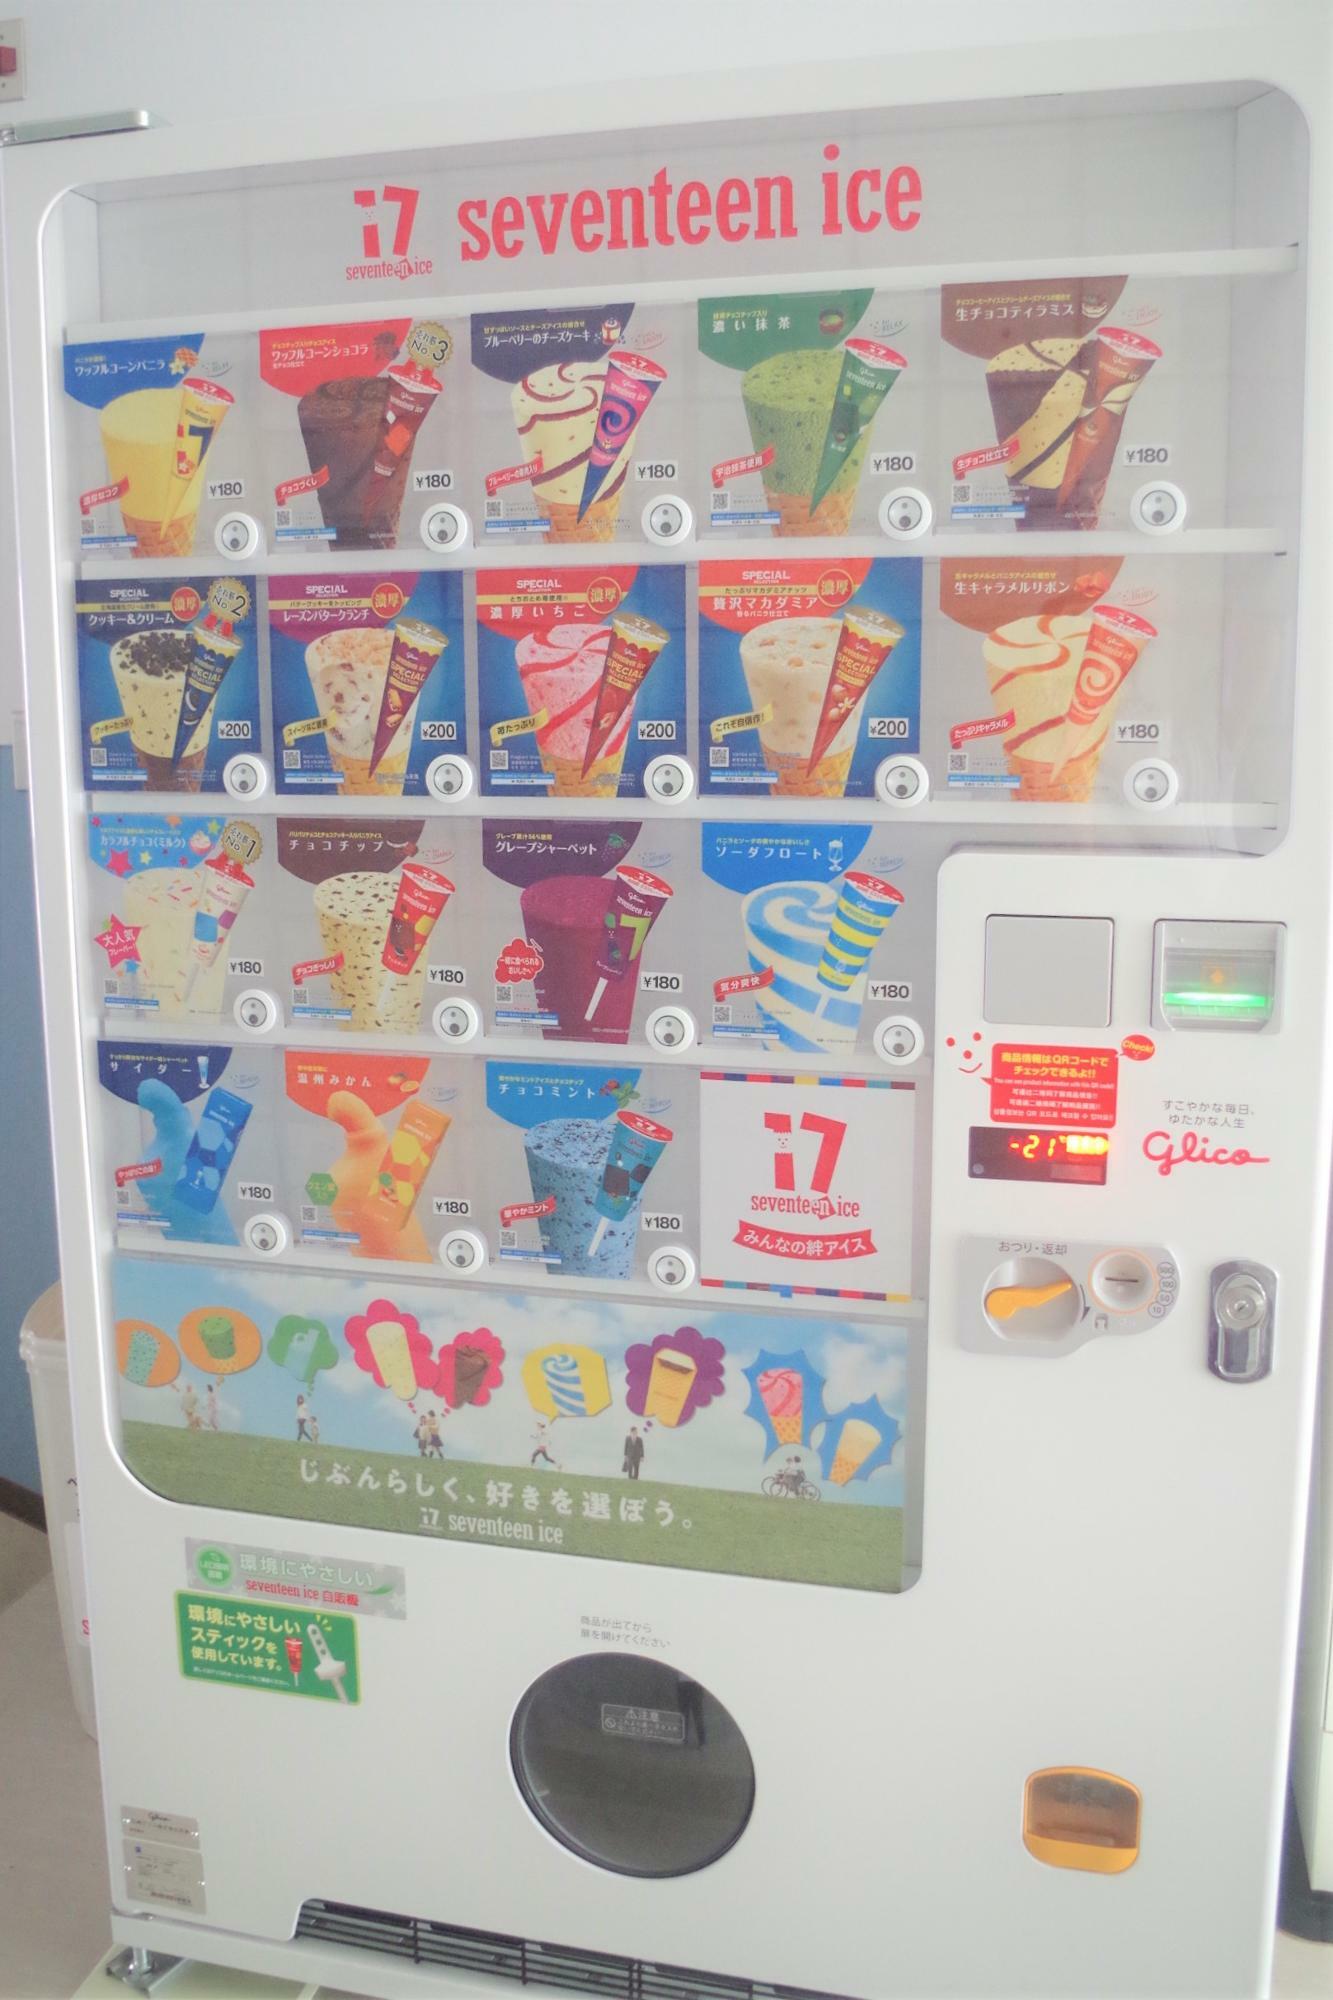 レジャー施設にかかせない、セブンティーンアイスクリームの自販機もありました。こちらは更衣室の出入り口あたりにあります